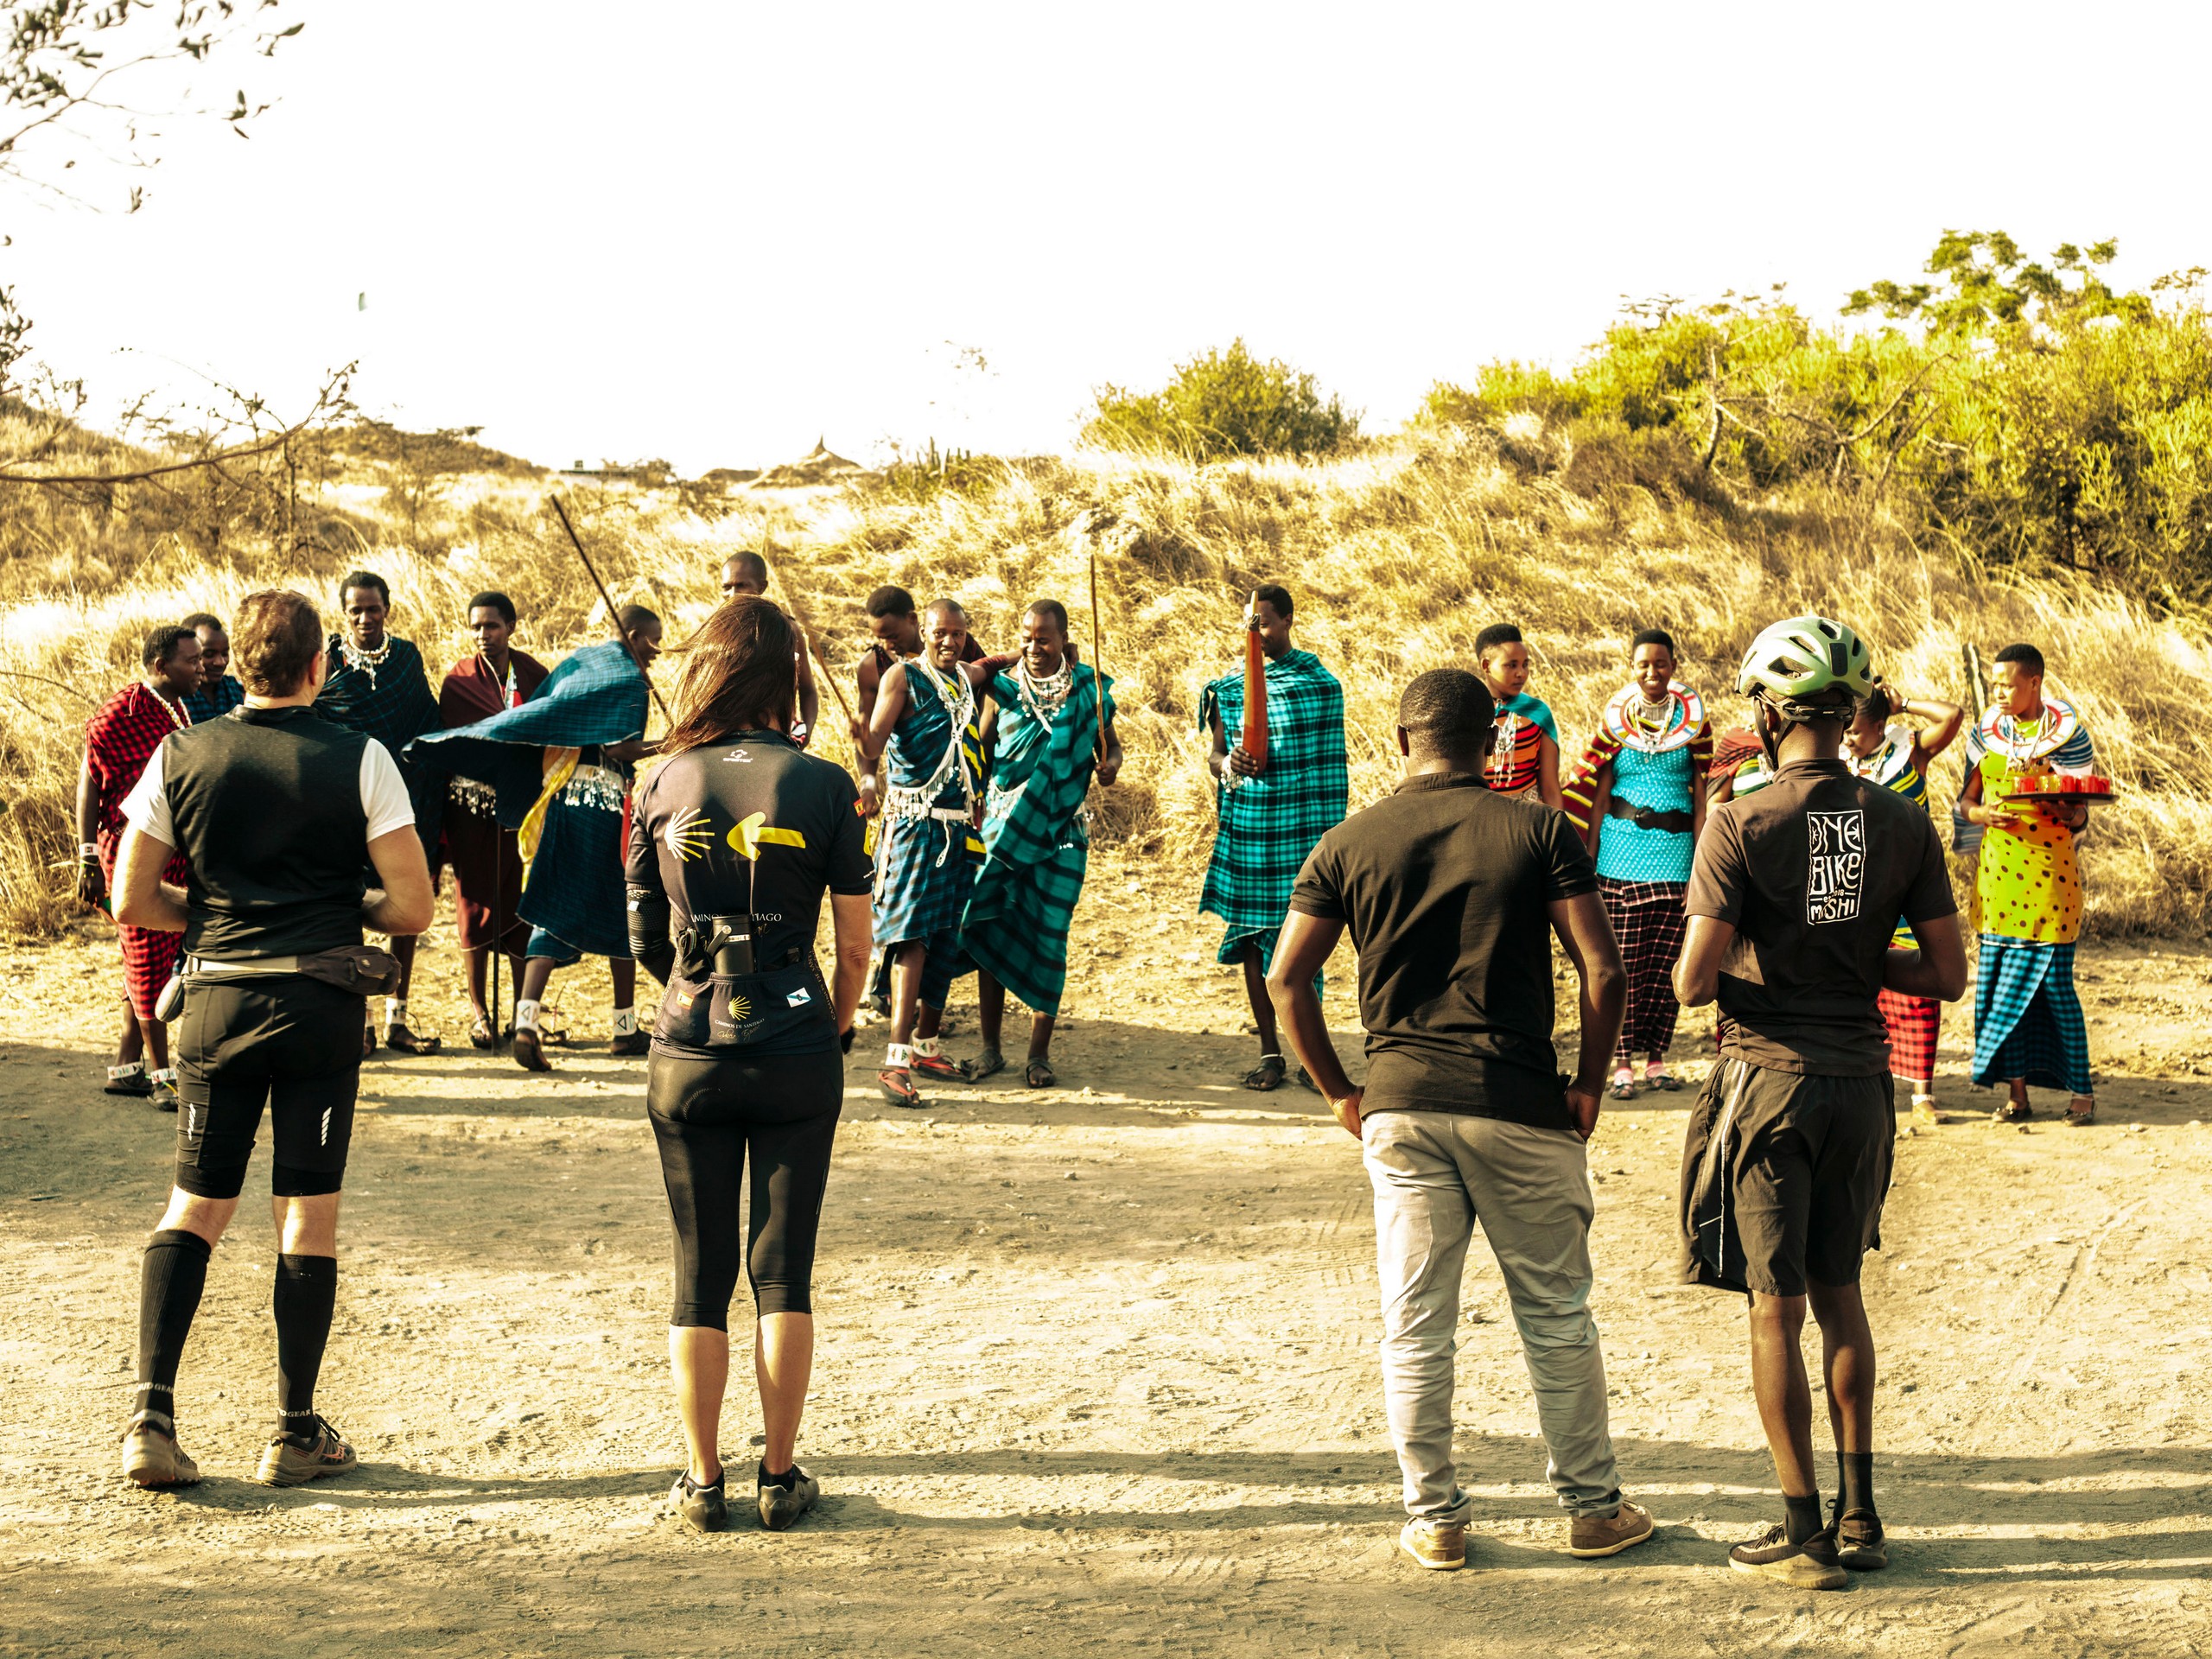 West Kilimanjaro Biking Tour, Tanzania 01